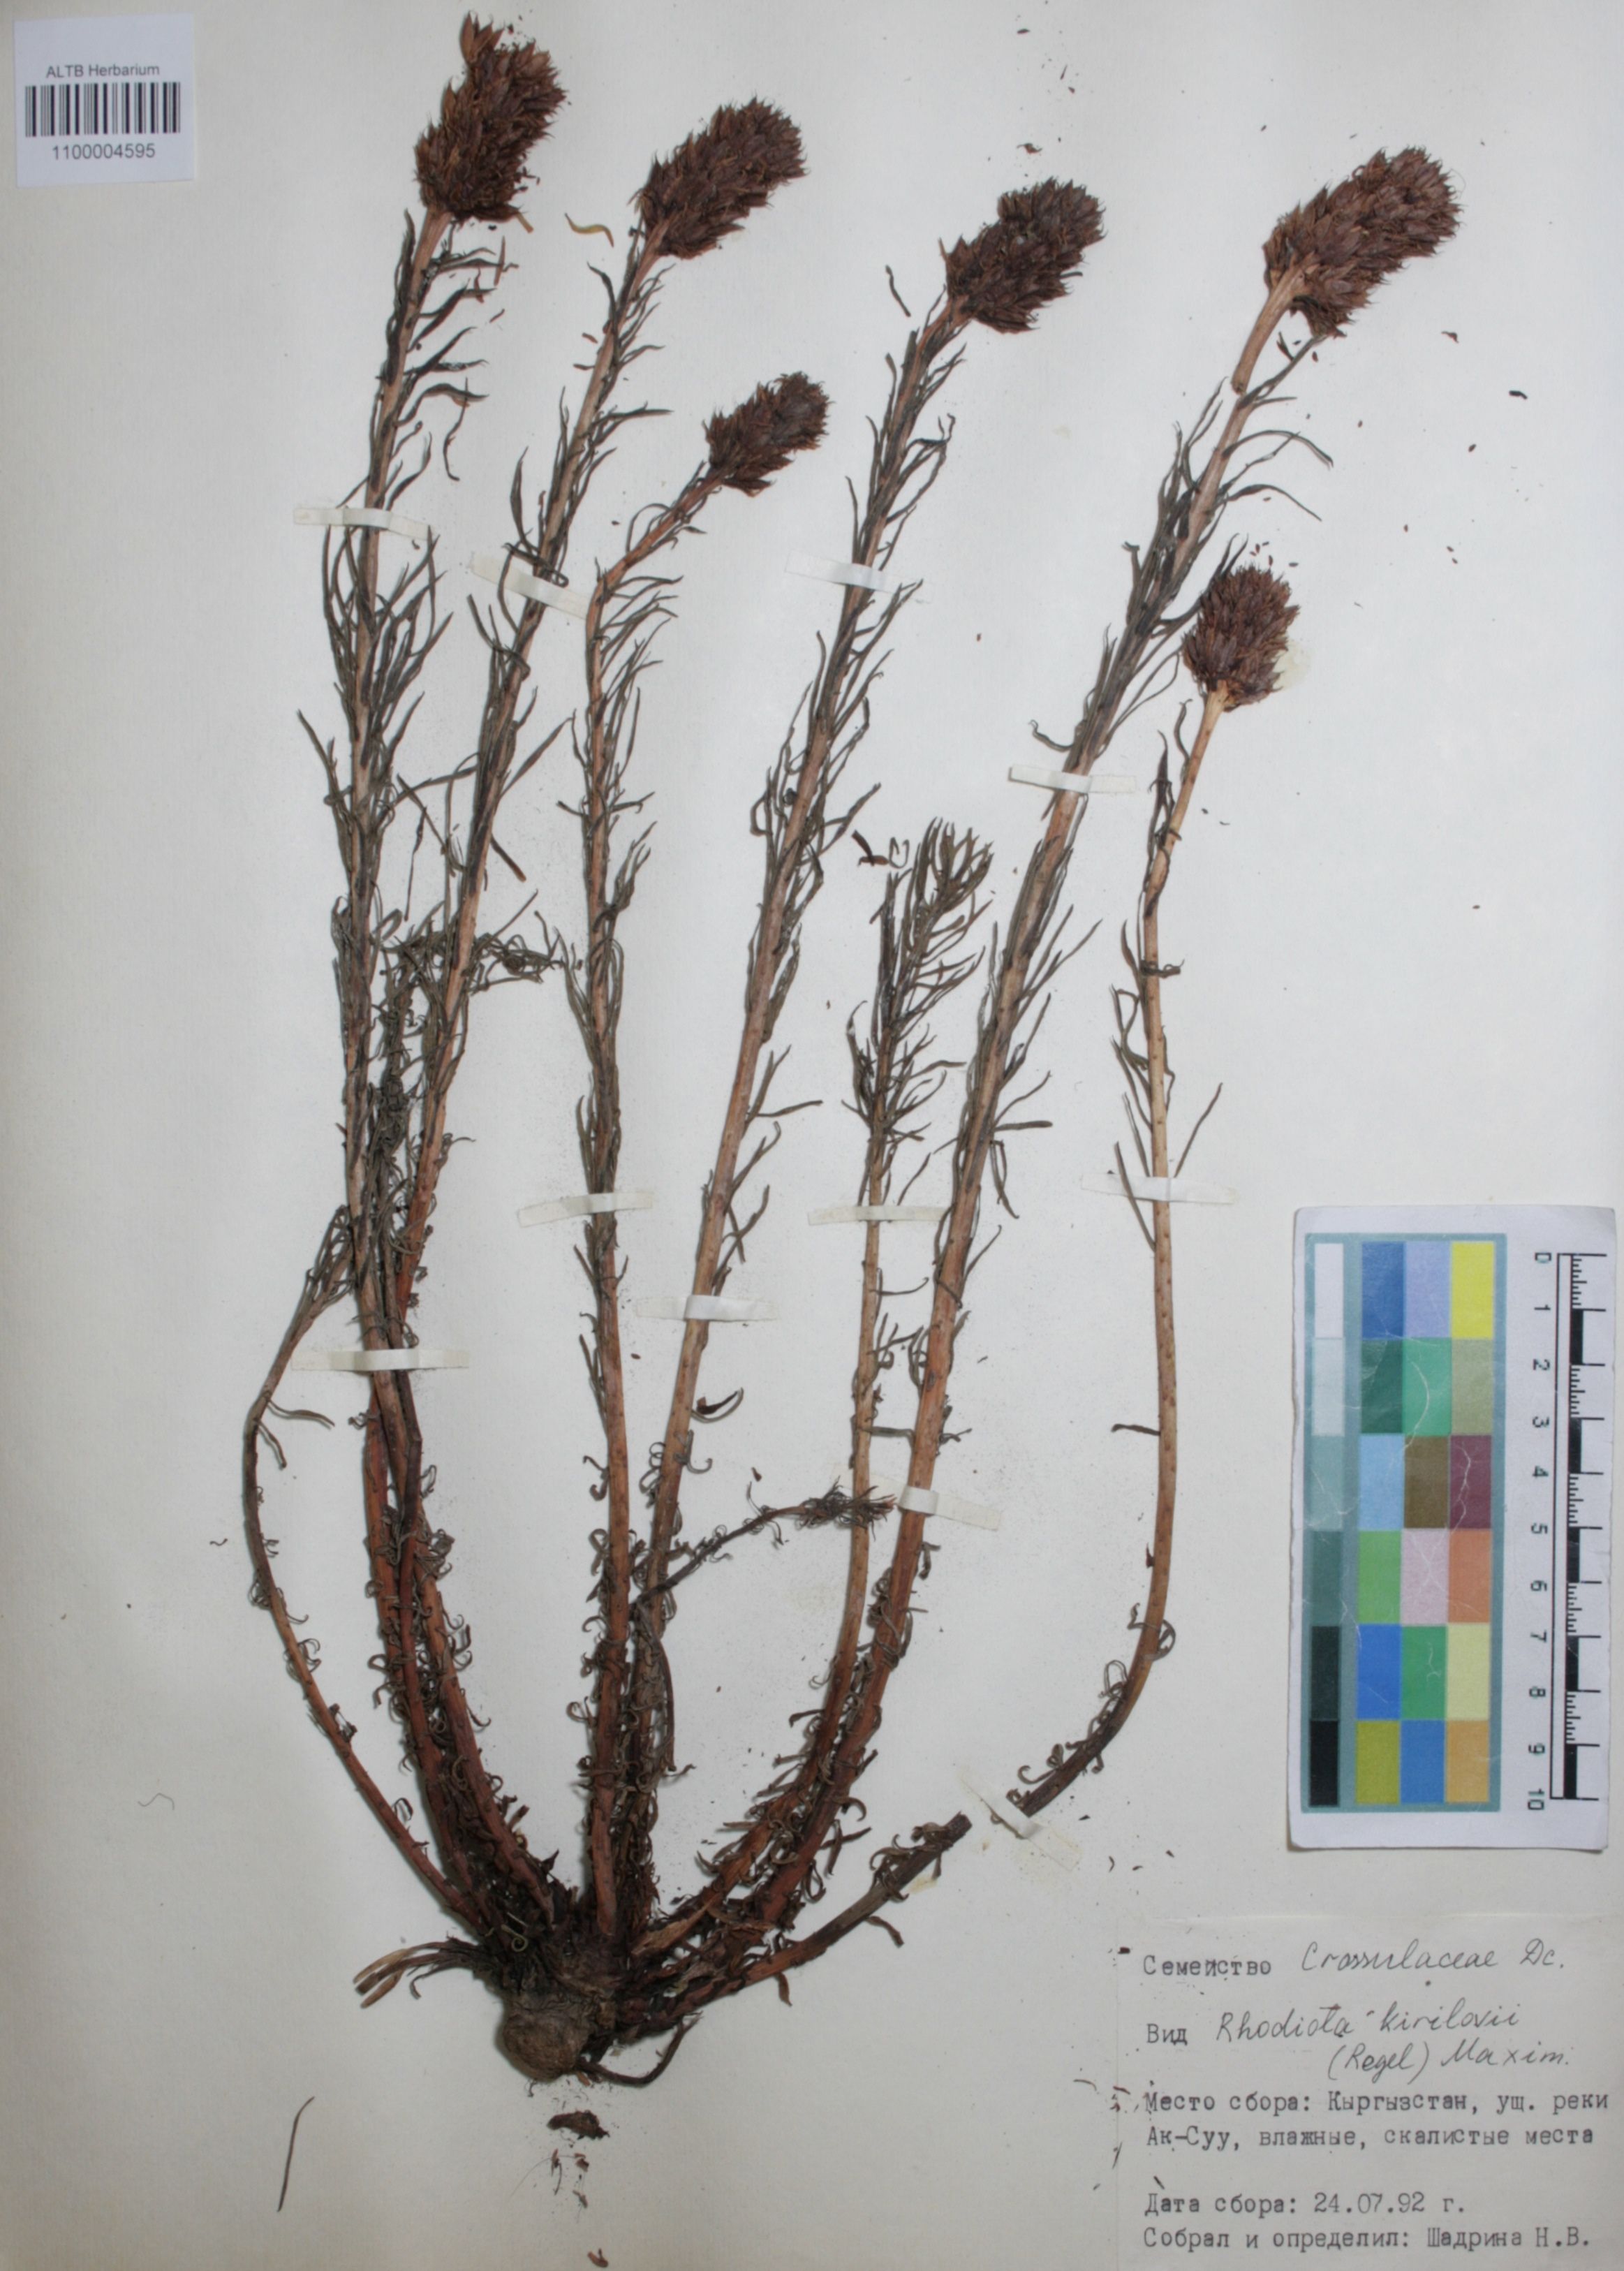 Crassulaceae,Rhodiola kirilovii (Regel) Maxim